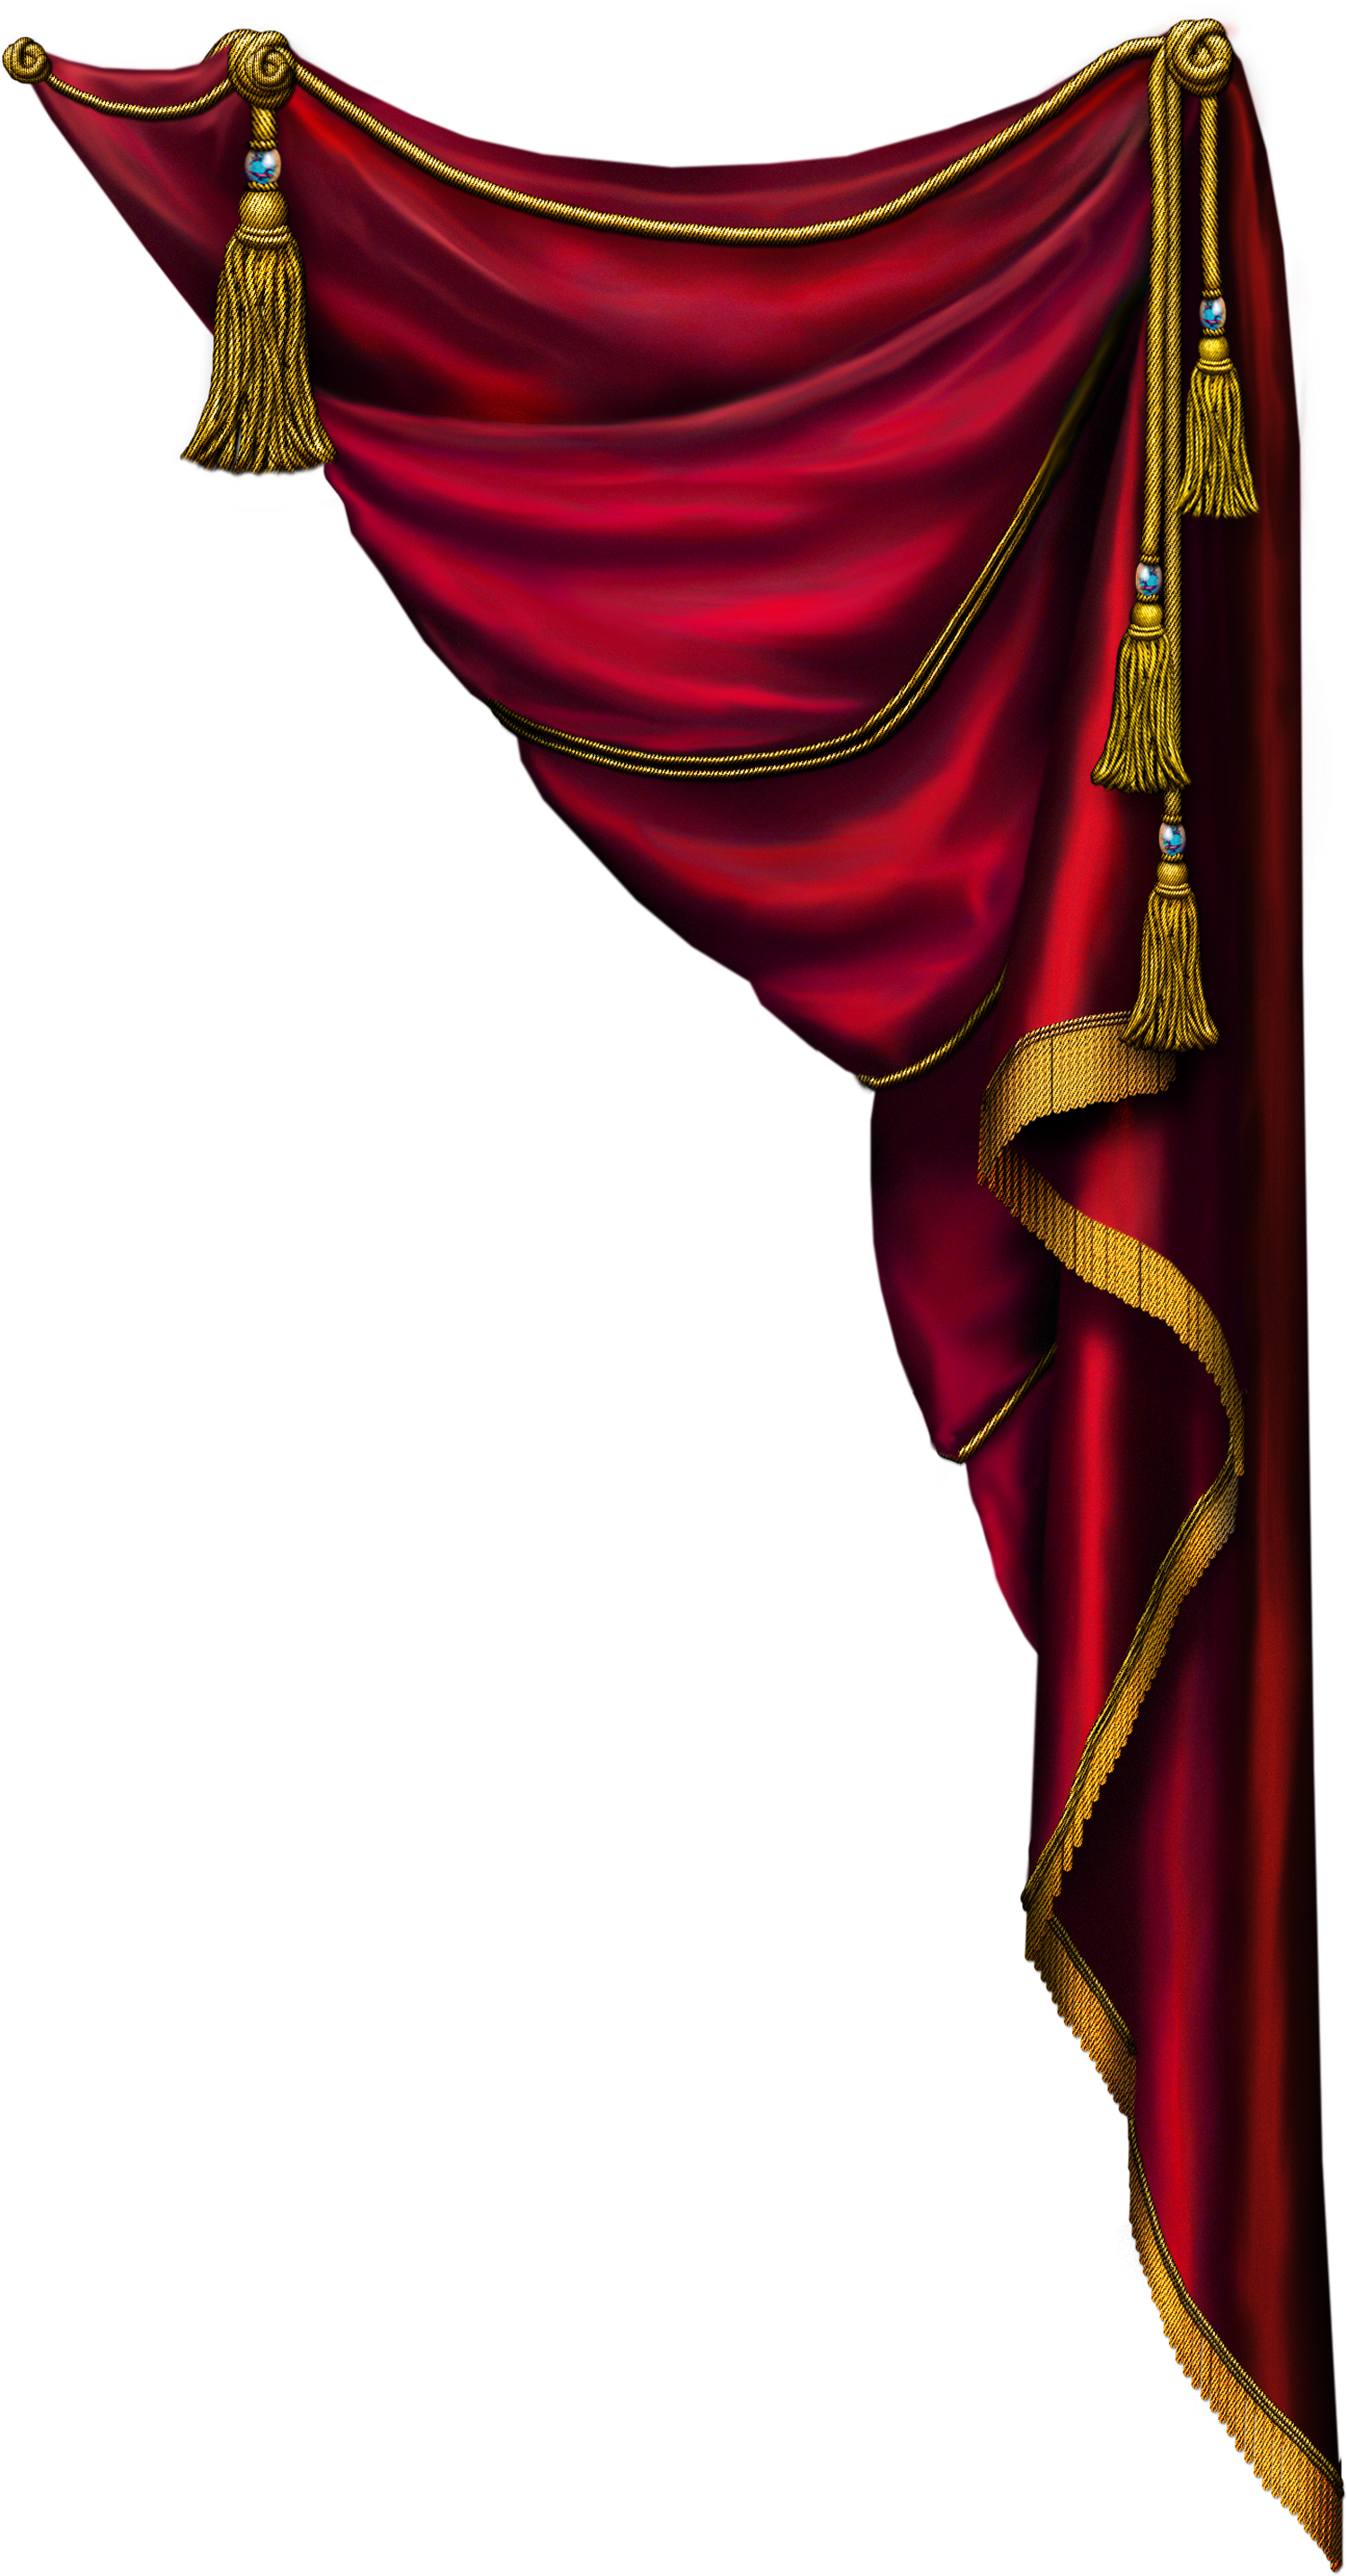 Elegant Red Curtainwith Gold Trim